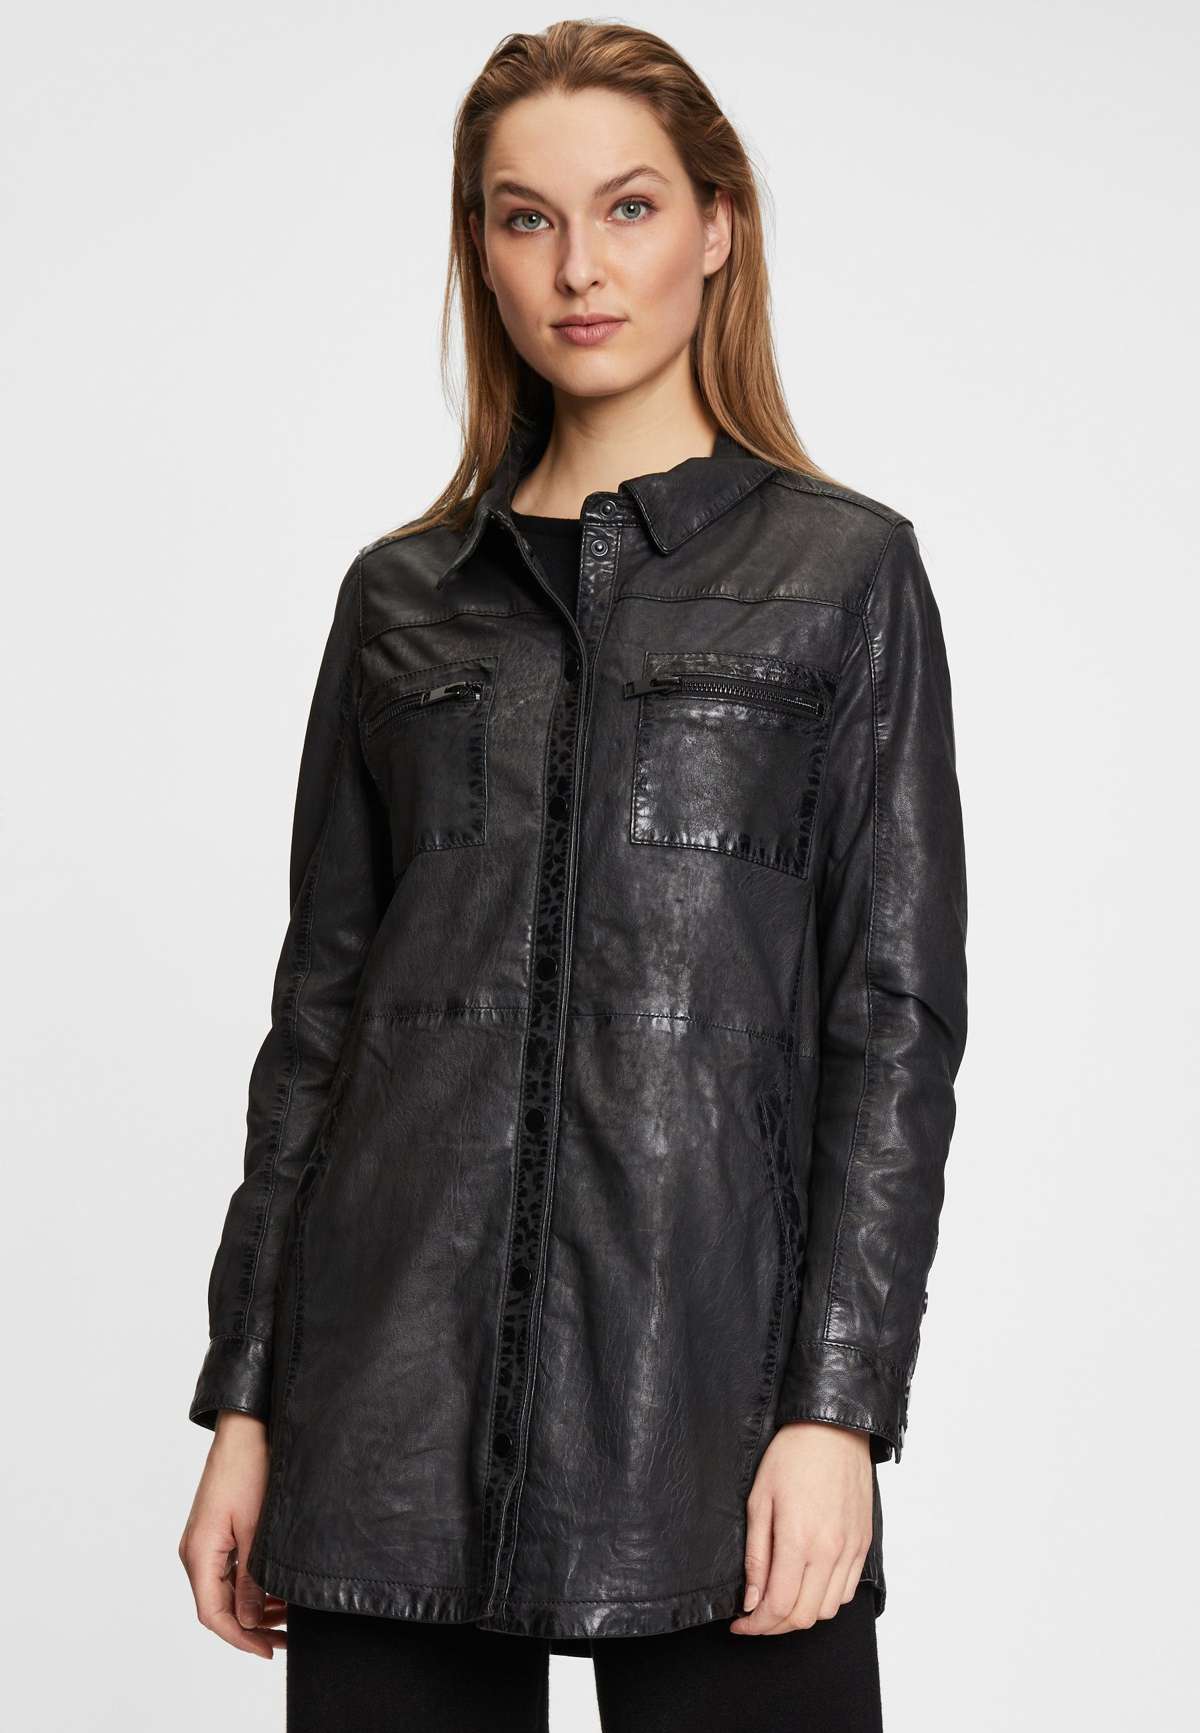 Кожаная куртка G2WMalia натуральная кожа женская кожаная рубашка наппа цвета ягненка черная